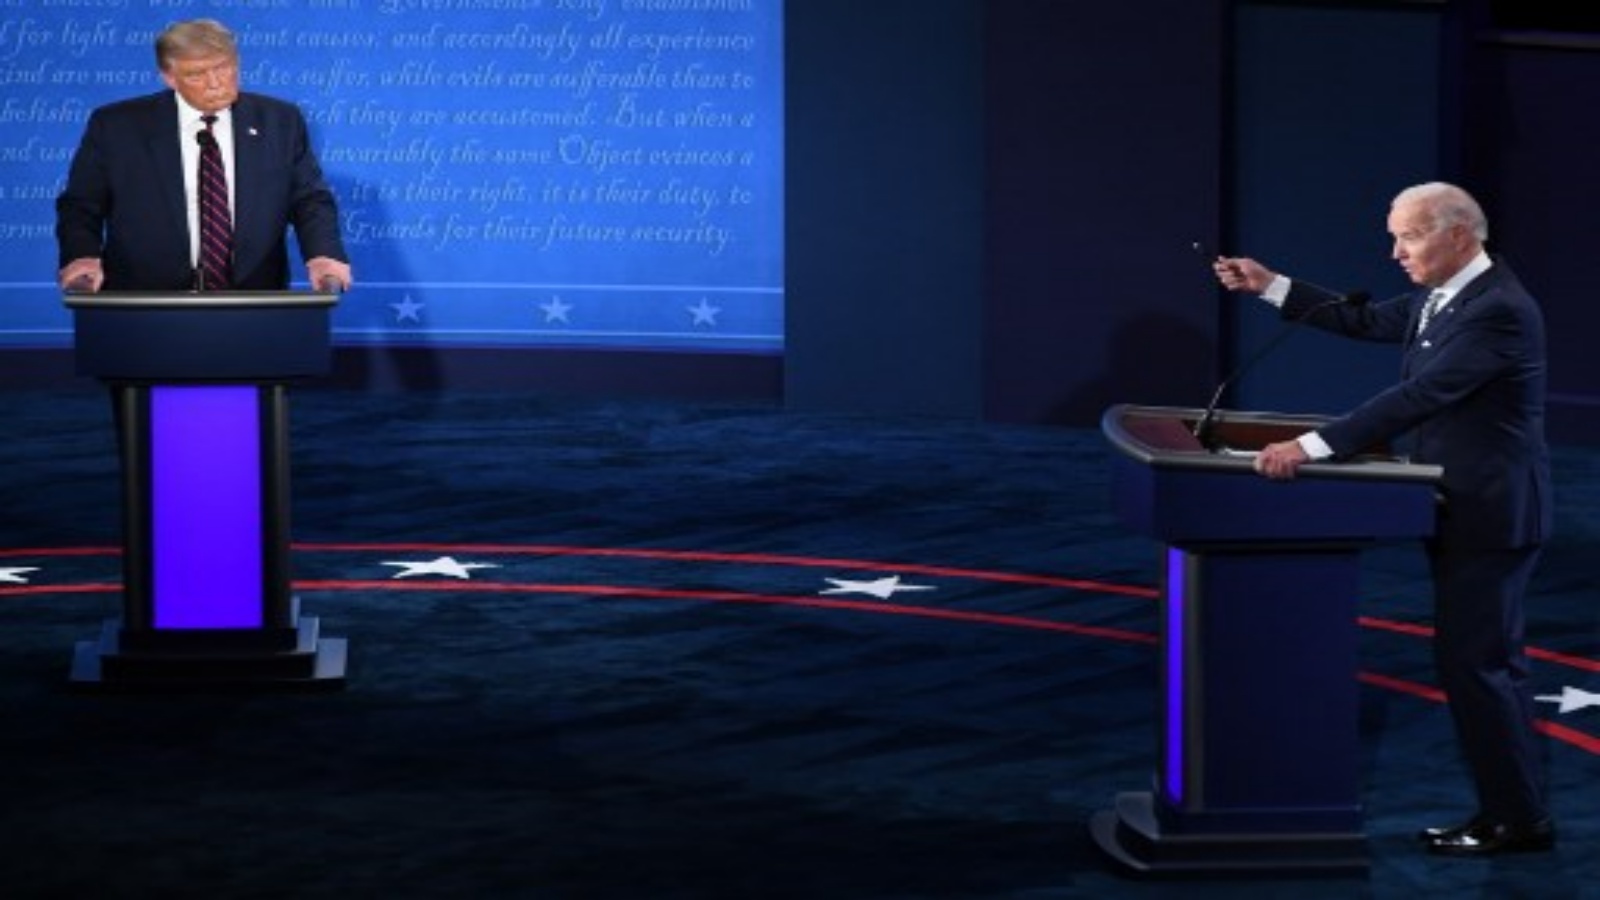 صورة من المناظرة الرئاسية الاولى في 29 سبتمبر 2020 ، بين الرئيس الأمريكي دونالد ترمب والمرشح الرئاسي الديمقراطي ونائب الرئيس الأمريكي السابق جو بايدن في جامعة كيس ويسترن ريزيرف وكليفلاند كلينك في كليفلاند ، أوهايو